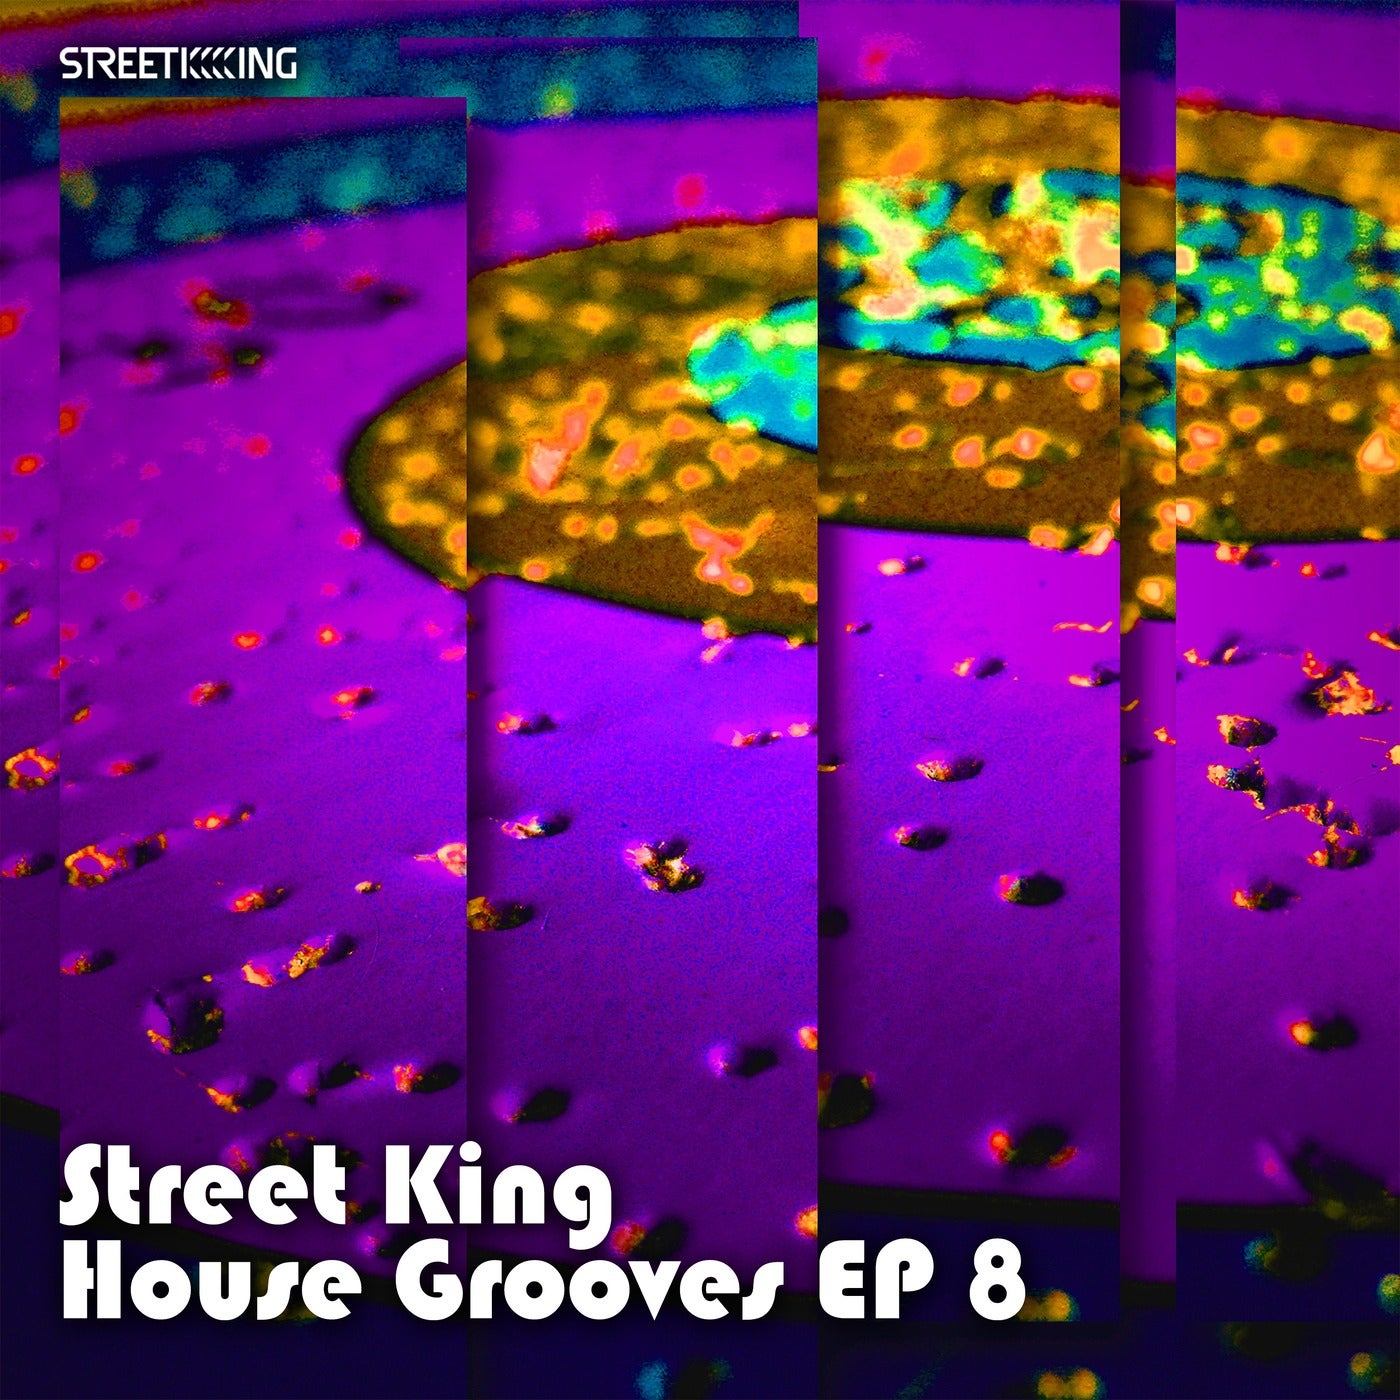 STREET KING HOUSE GROOVES EP 8 [SK588]